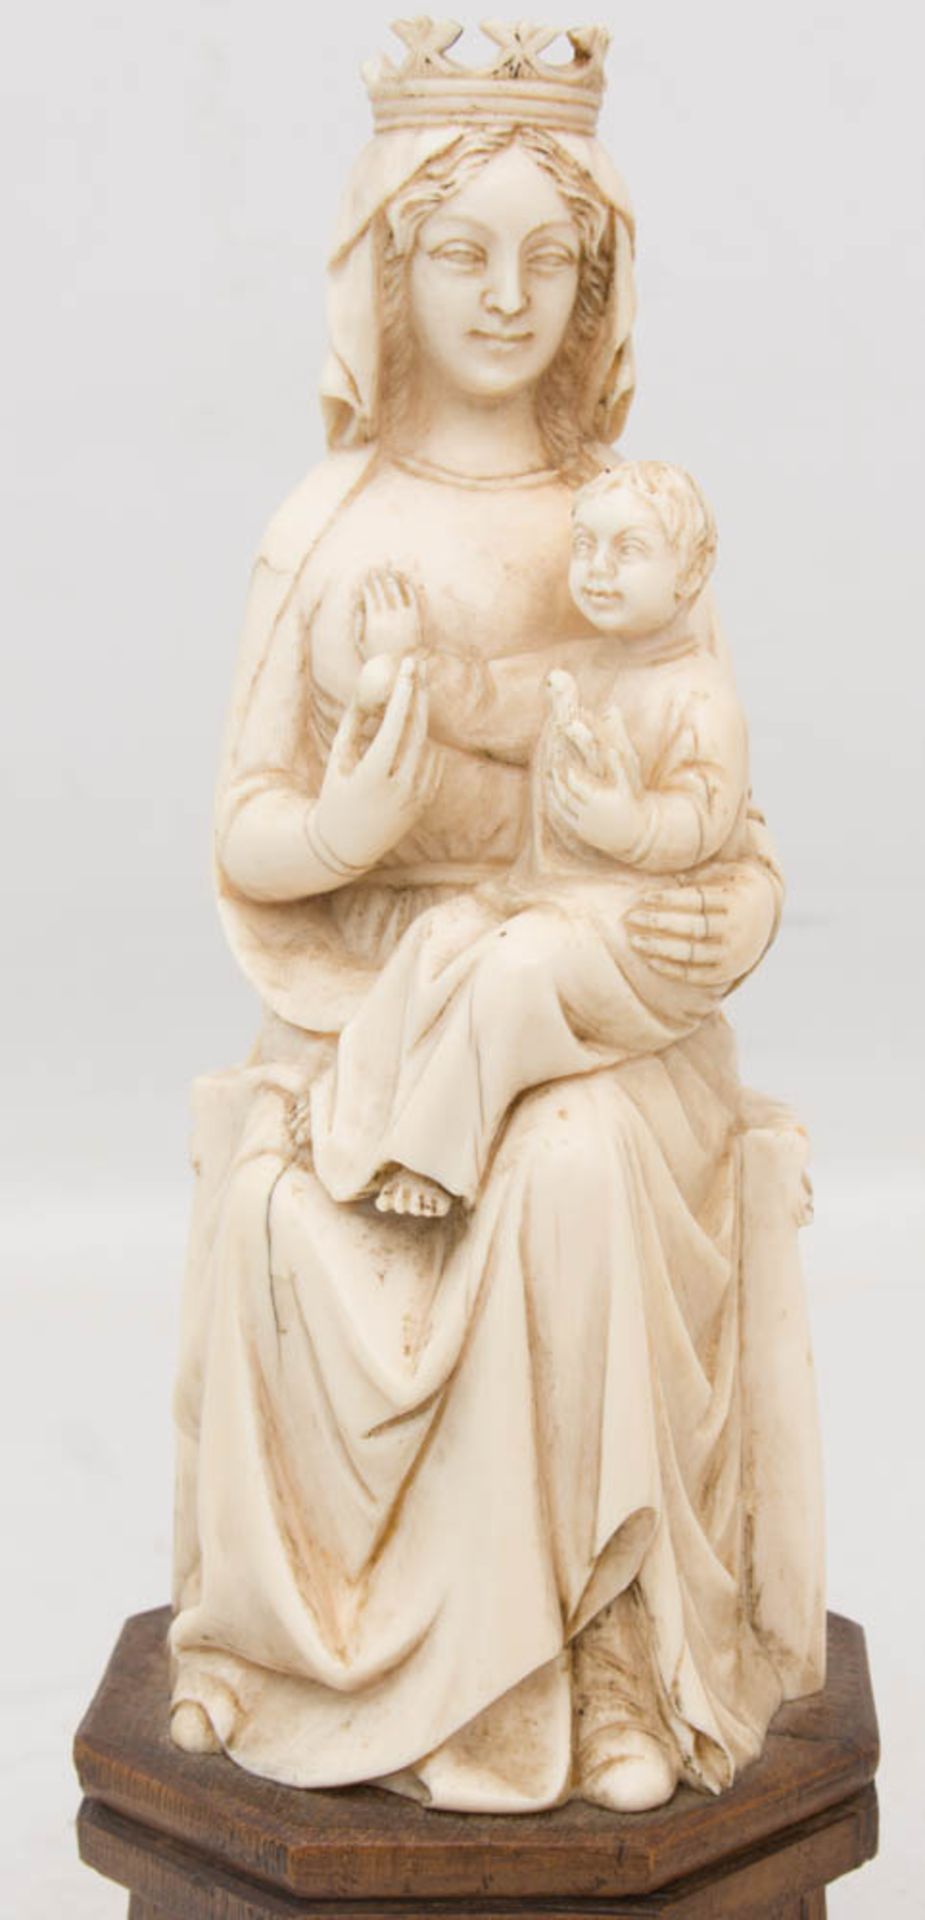 MADONNEN-FIGUR, Bein/Holz beschnitzt, um 1850Fein geschnitzte Madonna aus Bein, Historismus um - Bild 2 aus 3